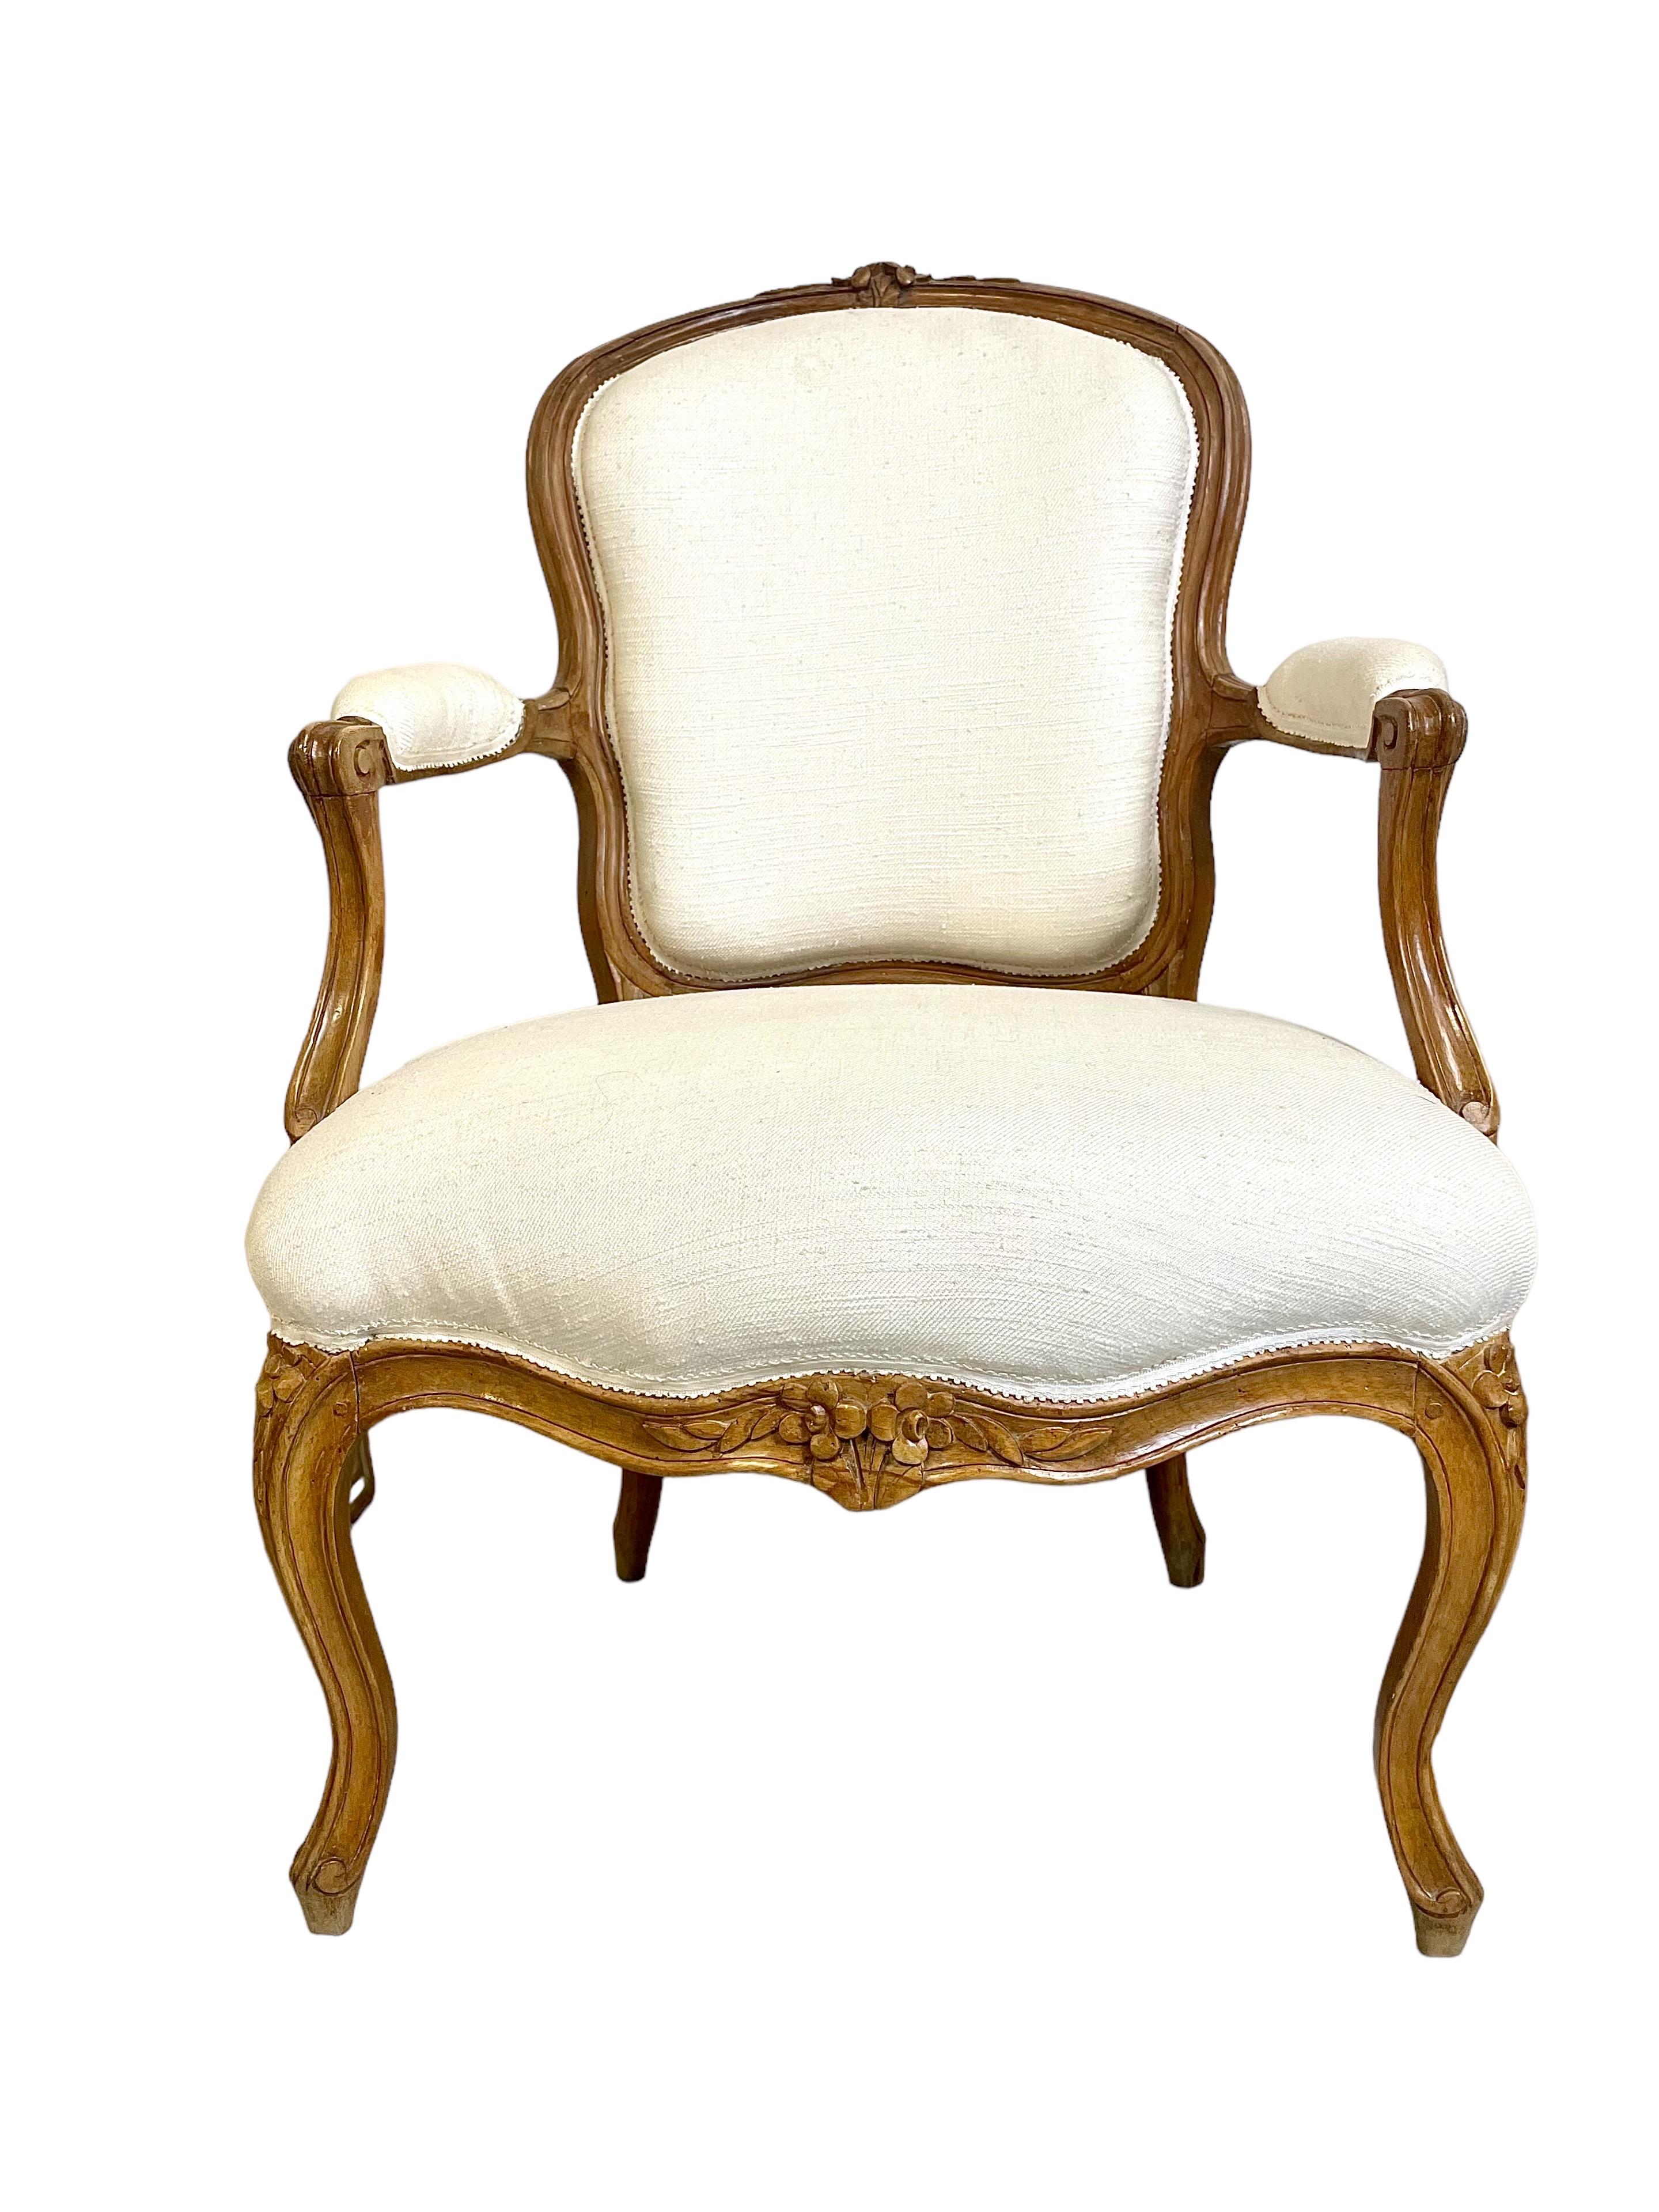 Très chic paire de fauteuils cabriolets d'époque Louis XV, en bois naturel, leurs armatures sculptées avec beaucoup de finesse et garnies de tissu crème. De délicieux motifs floraux sculptés à la main ornent la couronne du dossier, le tablier et le